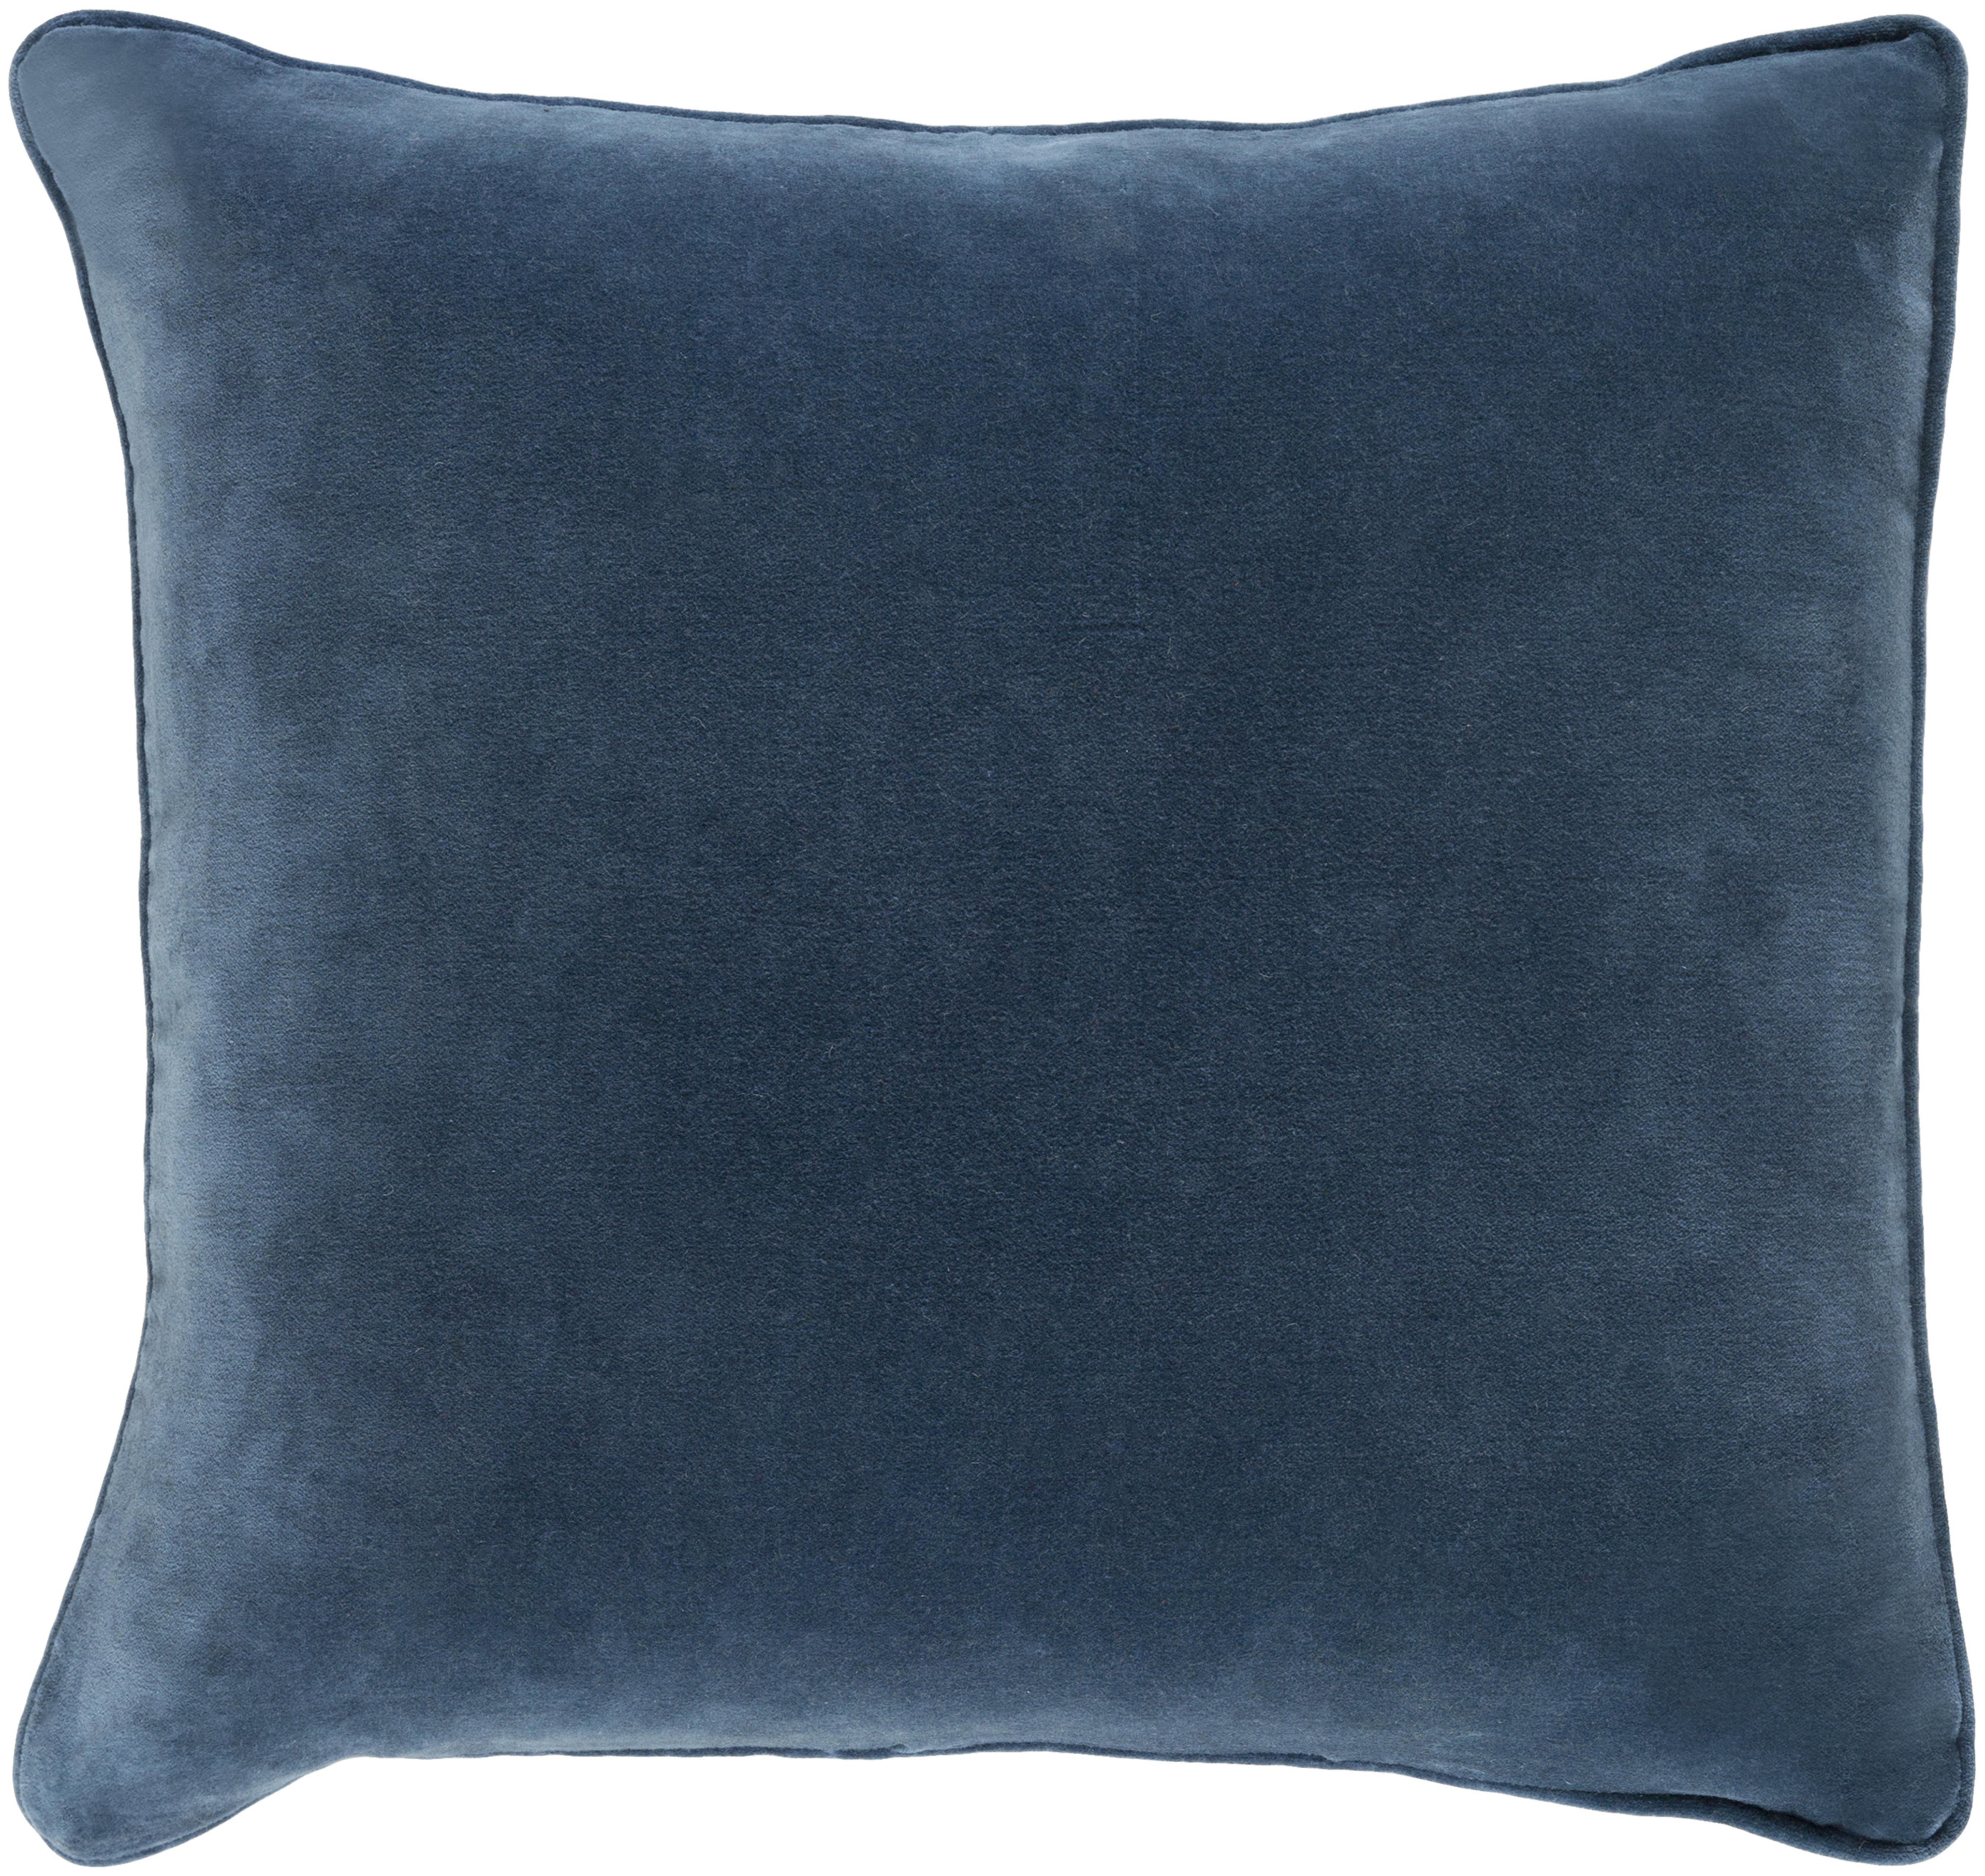 Safflower Pillow, Navy, 18" x 18" - Surya